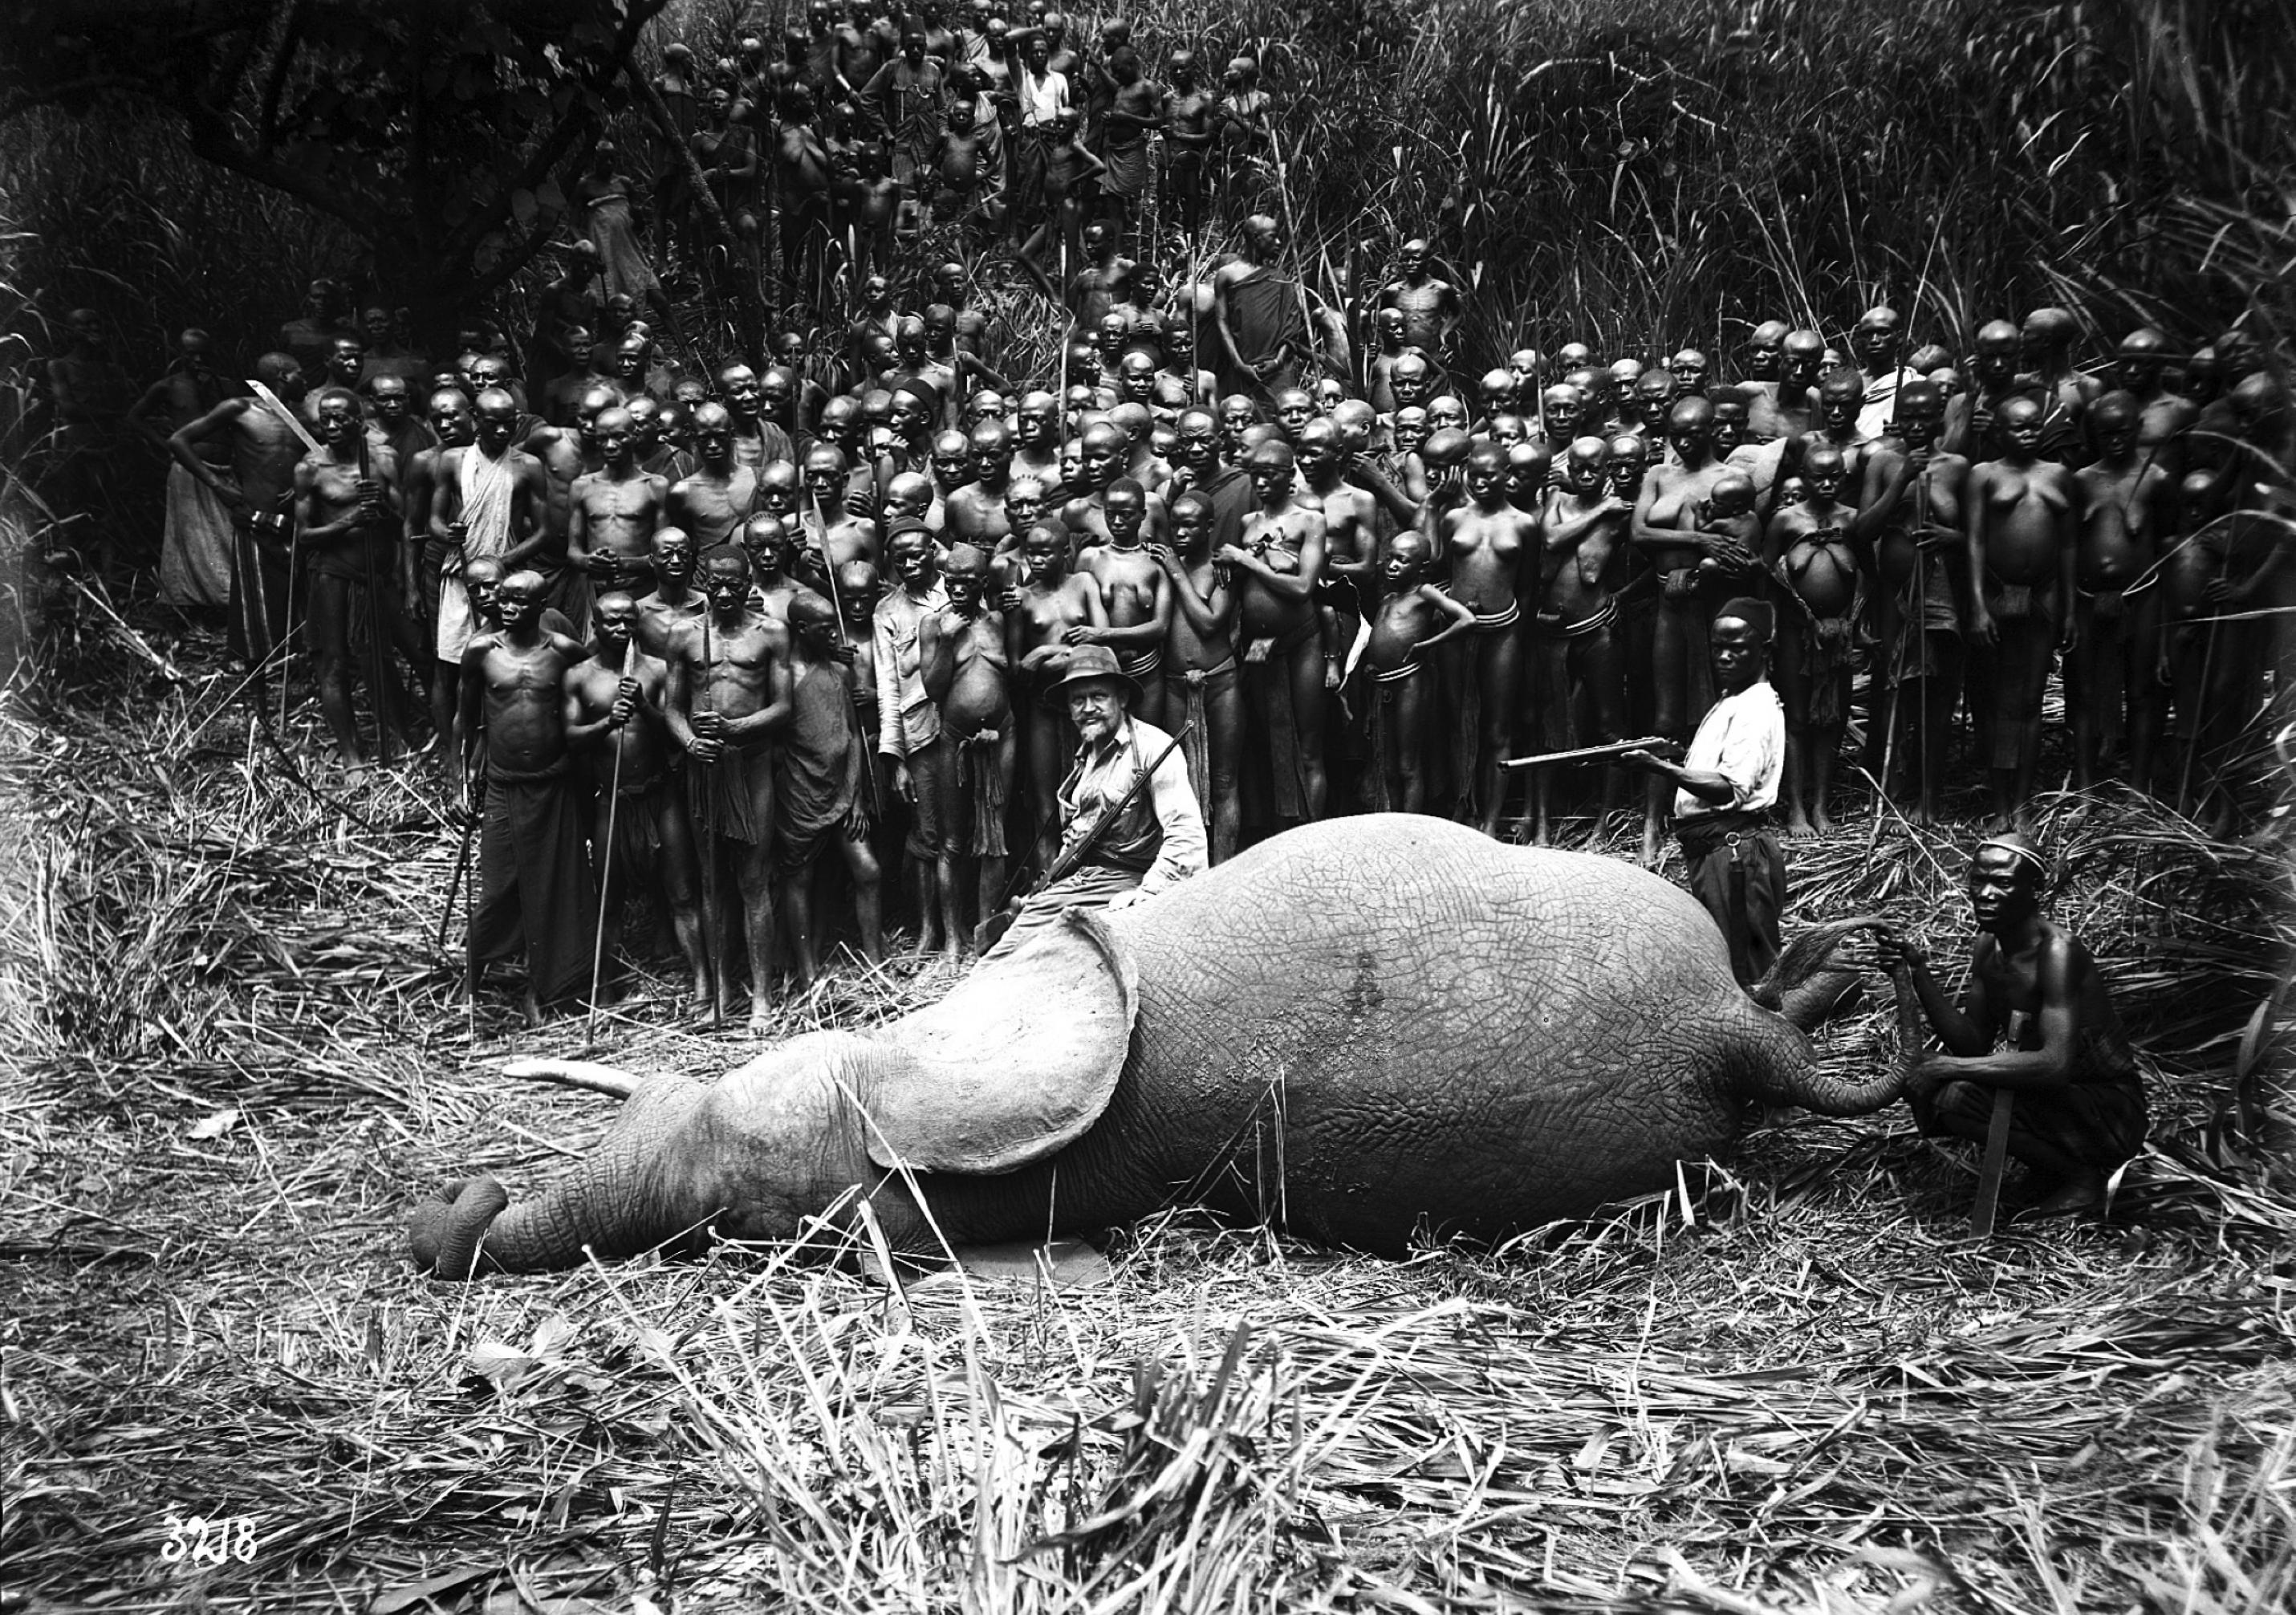 Historisches Foto eines erlegten Elefanten mit weißem Jäger und zahlreichen afrikanischen Helfern.